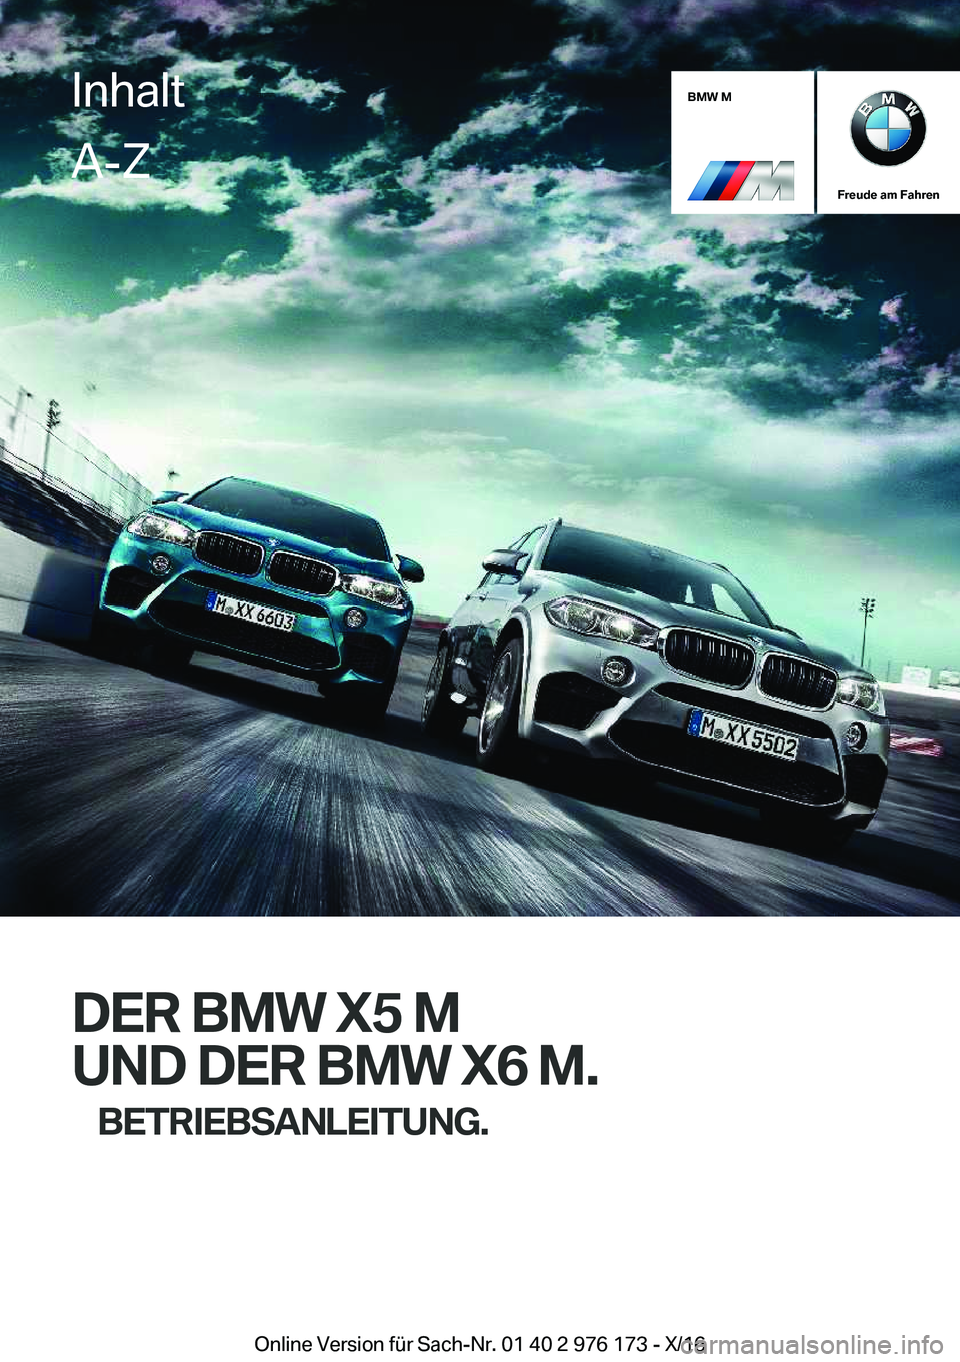 BMW X5 M 2017  Betriebsanleitungen (in German) �B�M�W��M
�F�r�e�u�d�e��a�m��F�a�h�r�e�n
�D�E�R��B�M�W��X�5��M�U�N�D��D�E�R��B�M�W��X�6��M�. �B�E�T�R�I�E�B�S�A�N�L�E�I�T�U�N�G�.
�I�n�h�a�l�t�A�-�Z
�O�n�l�i�n�e� �V�e�r�s�i�o�n� �f�ü�r� �S